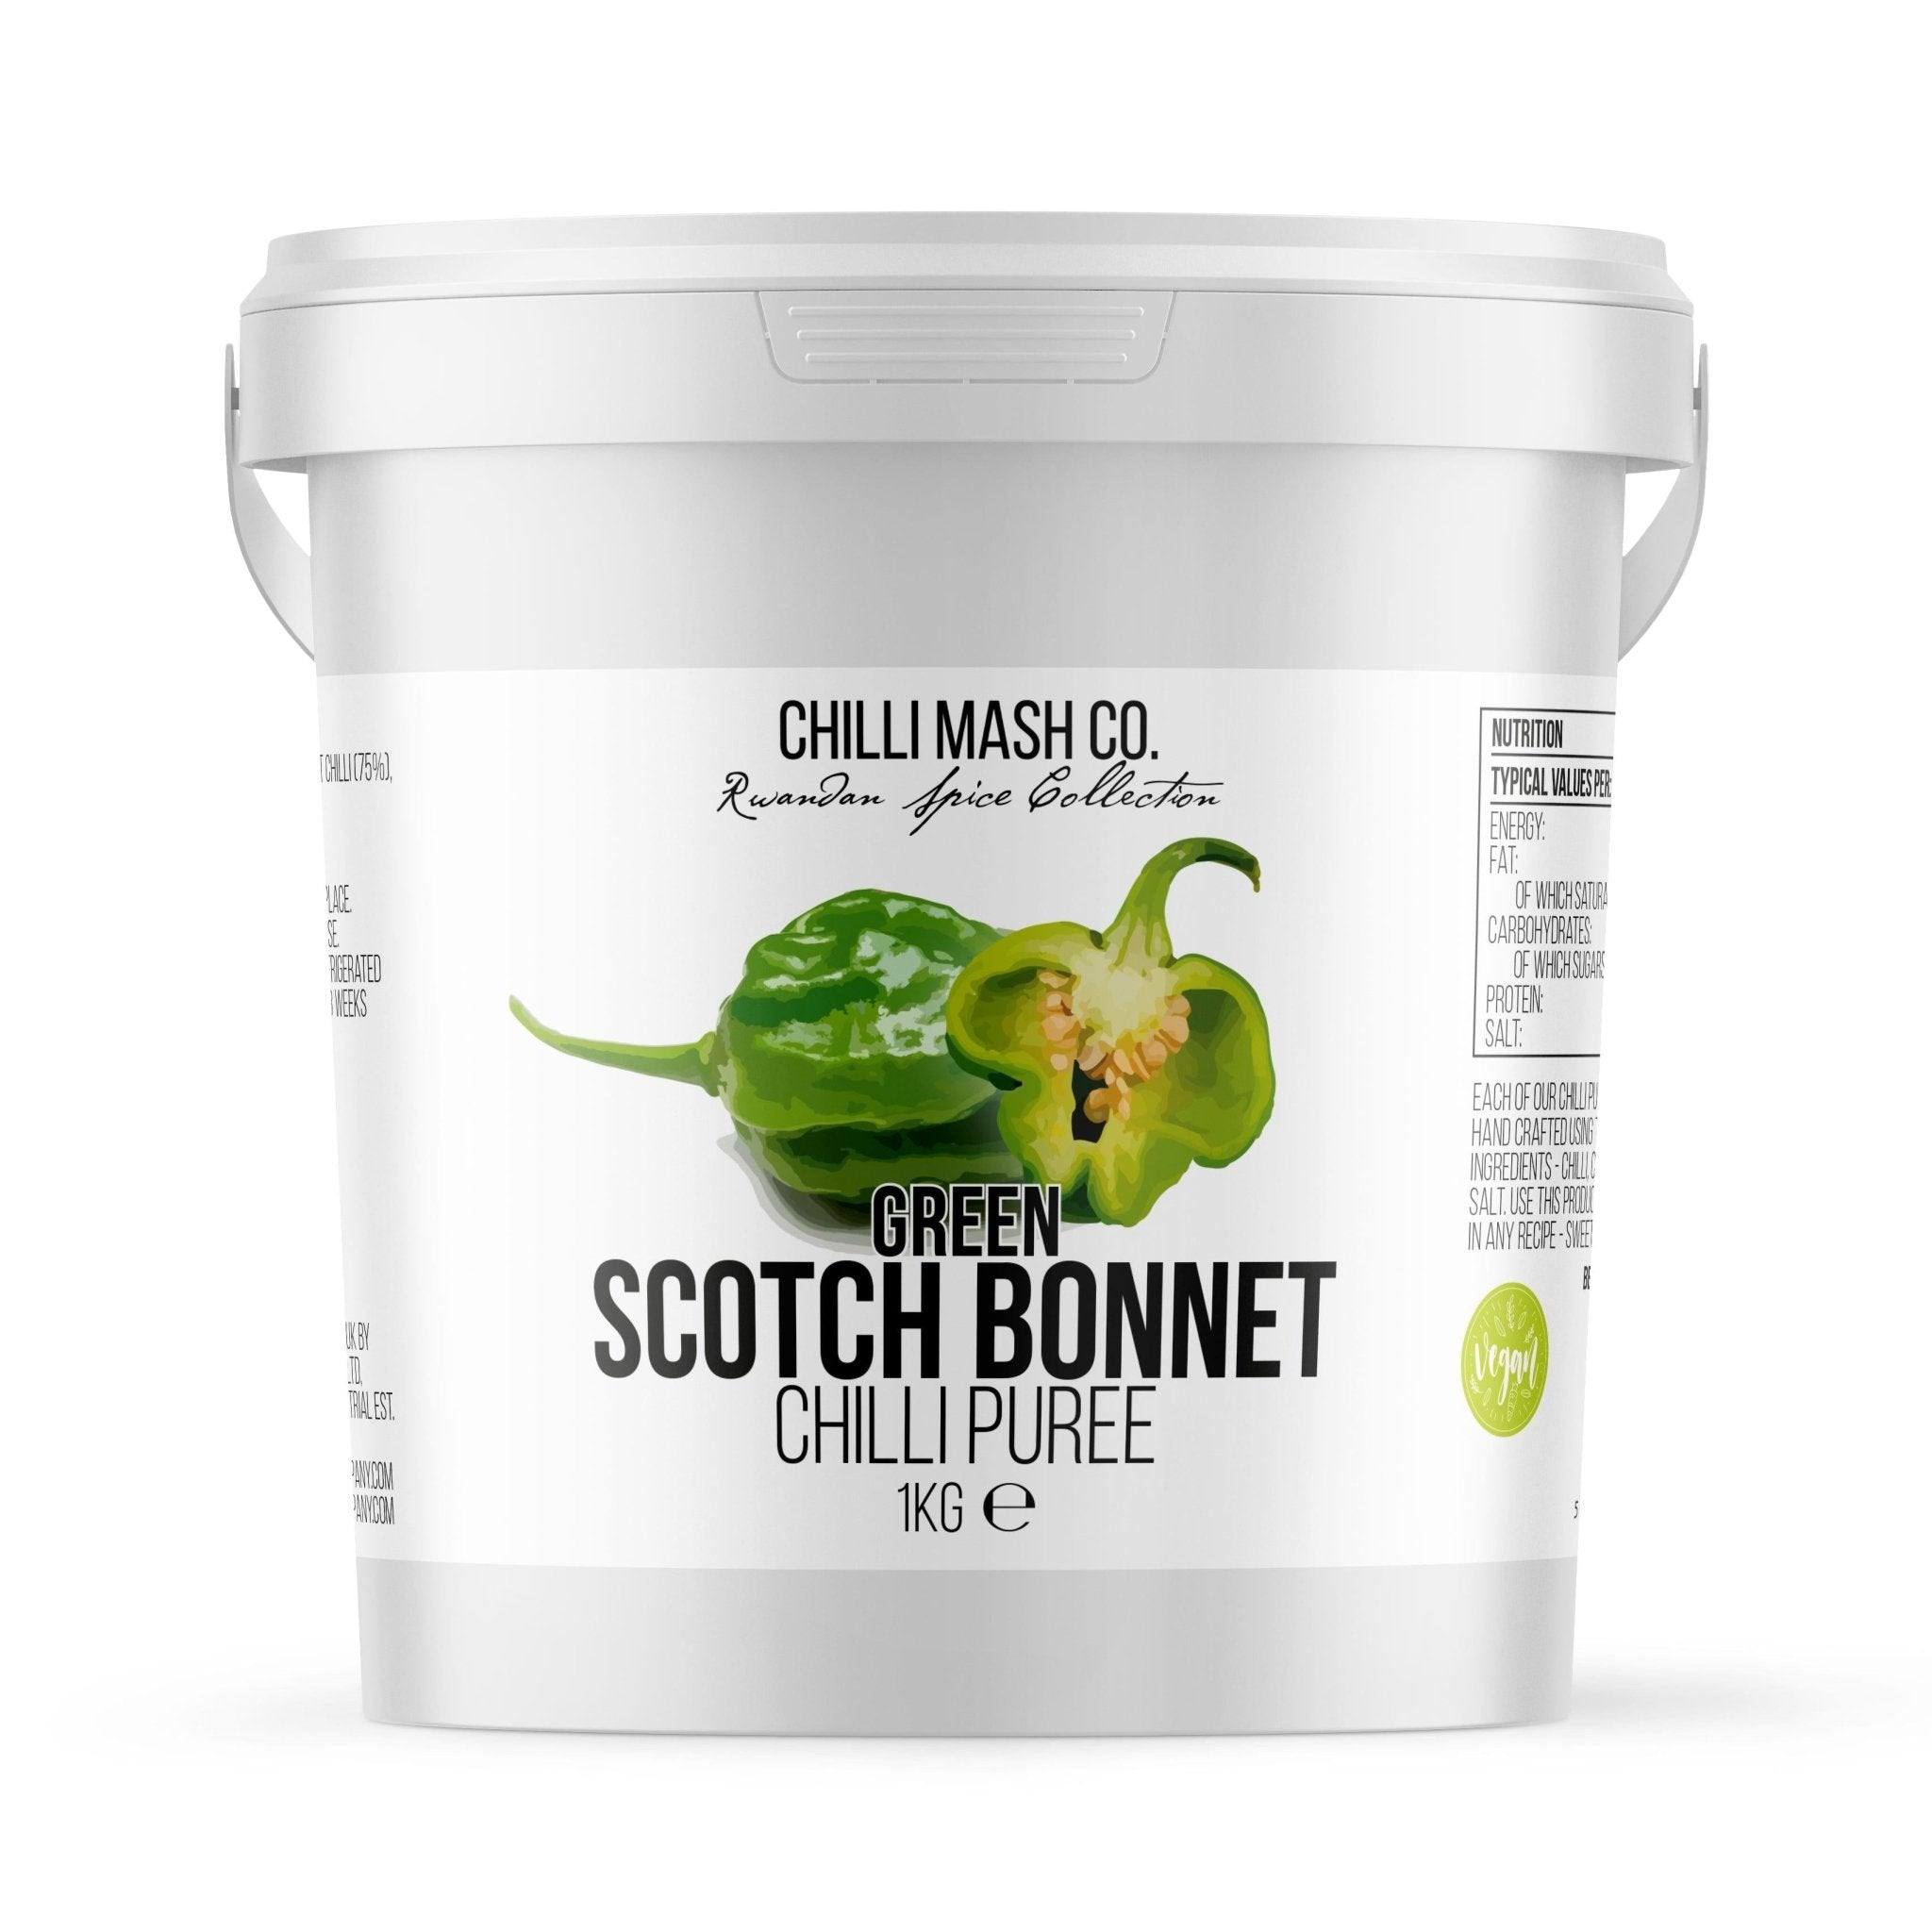 Green Scotch Bonnet Chilli Puree | 1kg | Chilli Mash Company - One Stop Chilli Shop